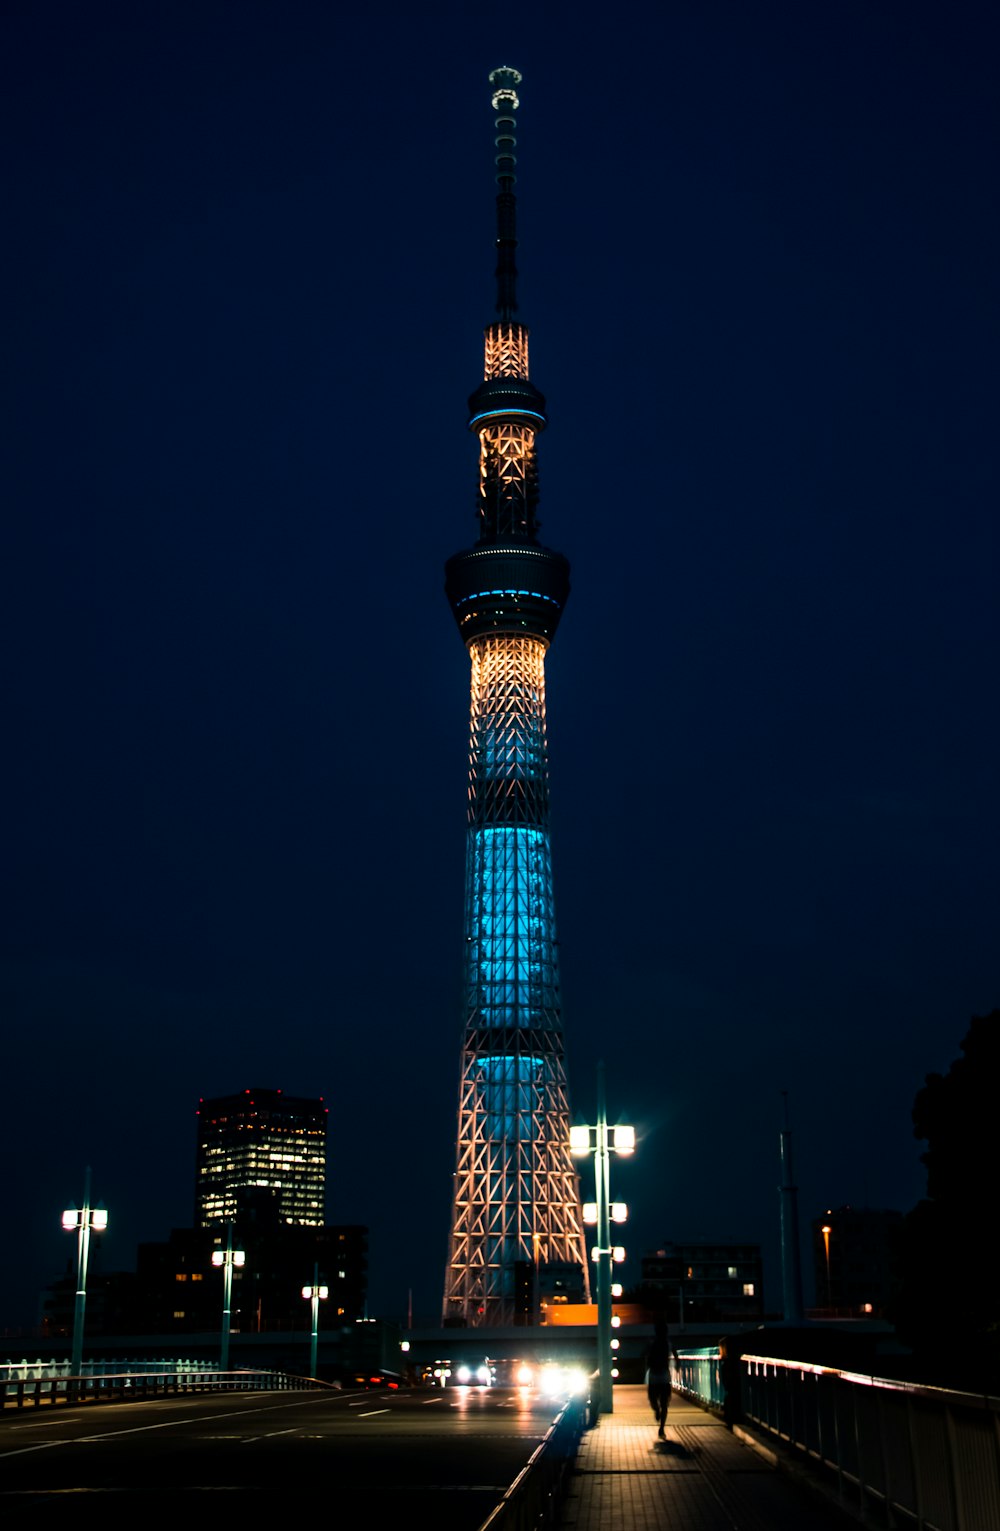 torre illuminata durante le ore notturne